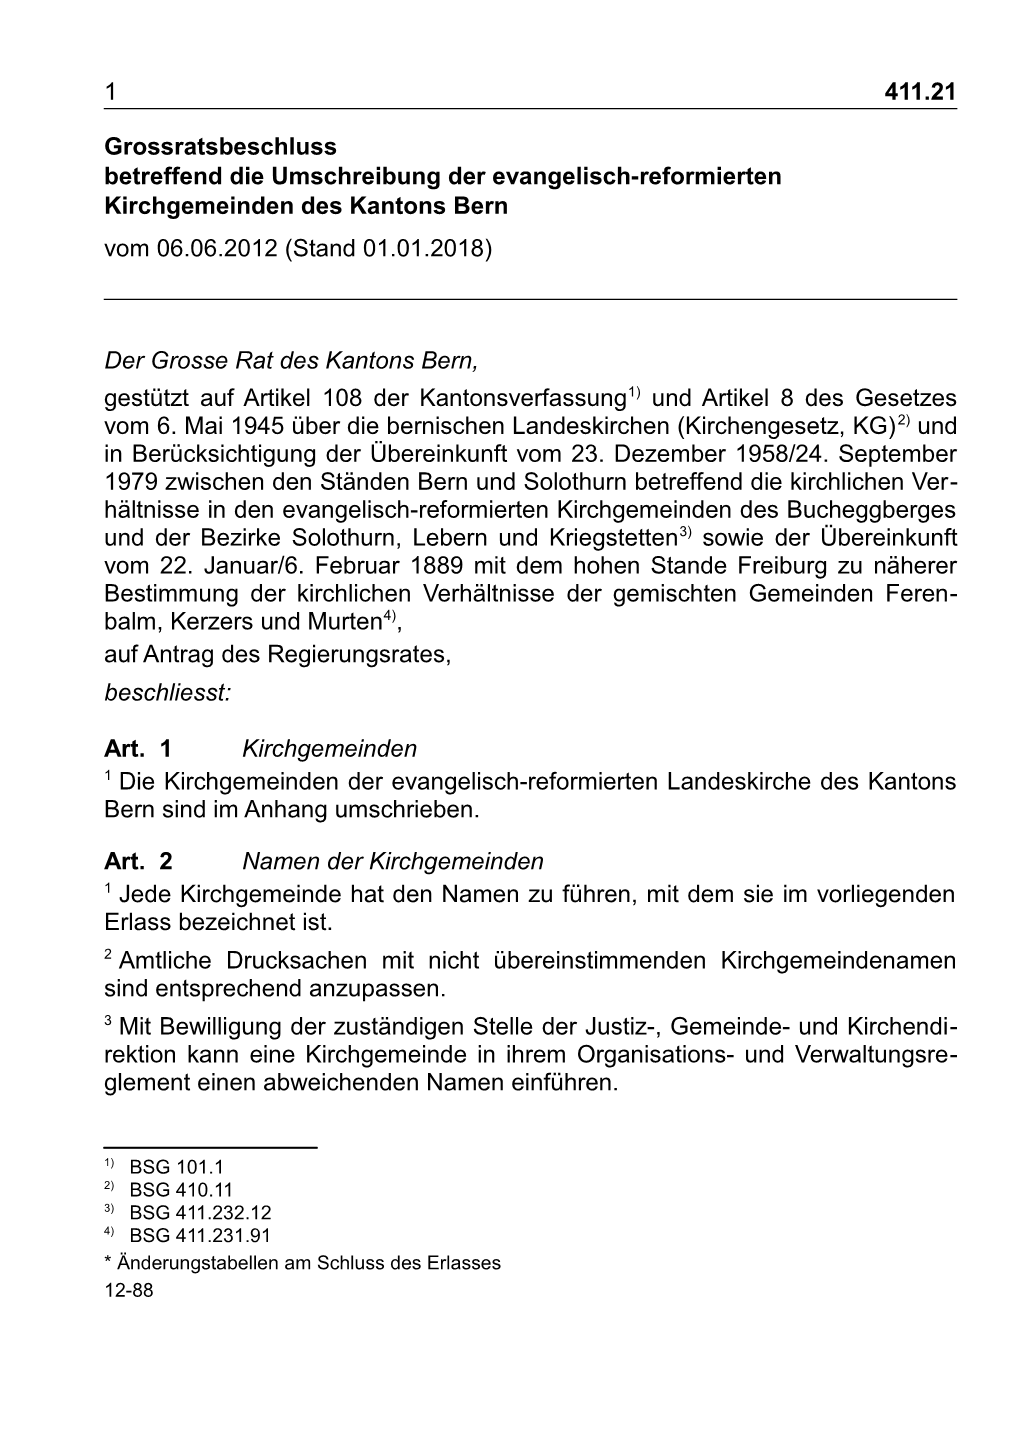 Grossratsbeschluss Betreffend Die Umschreibung Der Evangelisch-Reformierten Kirchgemeinden Des Kantons Bern Vom 06.06.2012 (Stand 01.01.2018)